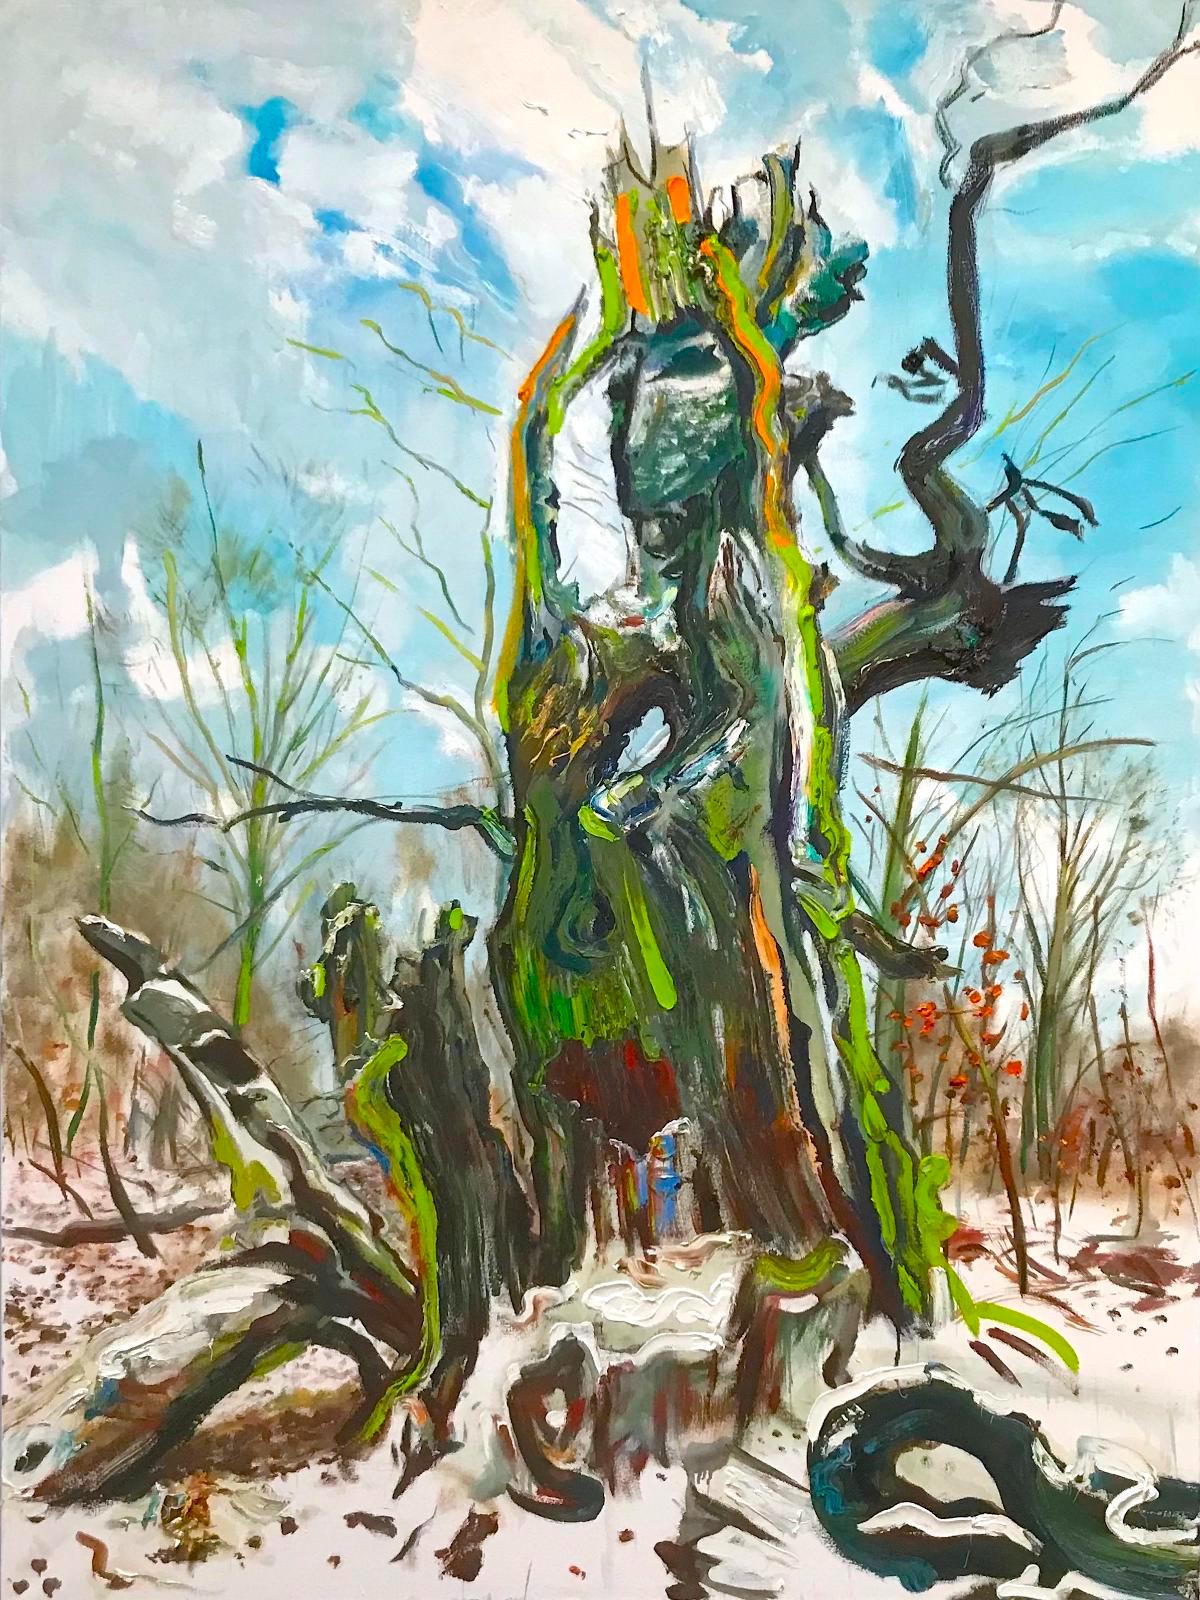 Saxana, Du, Doppelbaumporträt, Die Schneekönigin, plein air 2019, Öl auf Leinwand, 160 x 120 cm